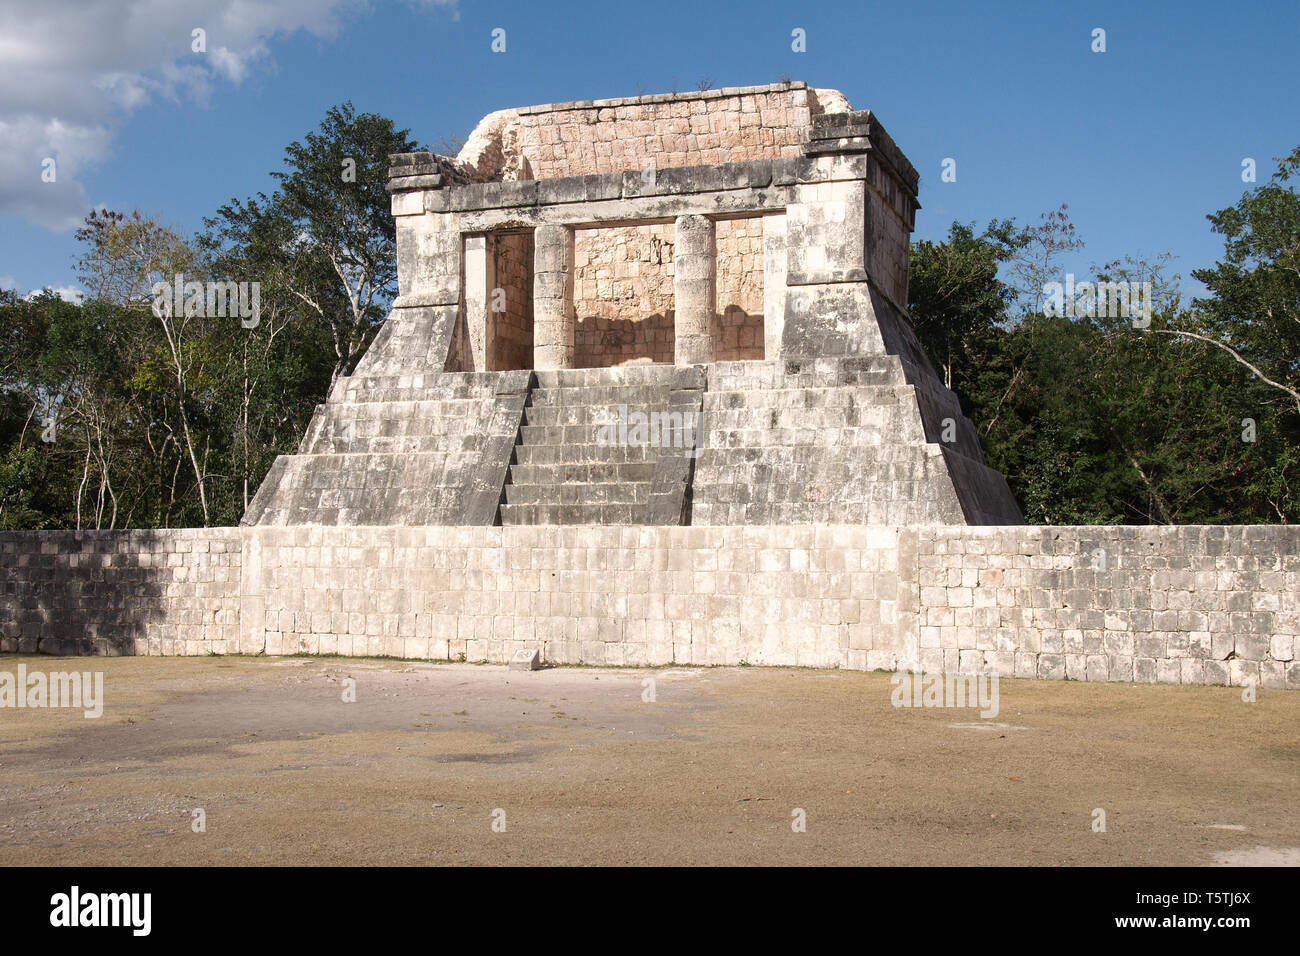 Blick auf die Ruinen der Maya auf der Chichen Itza Archäologische Stätte entfernt, die zum UNESCO-Weltkulturerbe gehört. Yucatan, Mexiko. Stockfoto